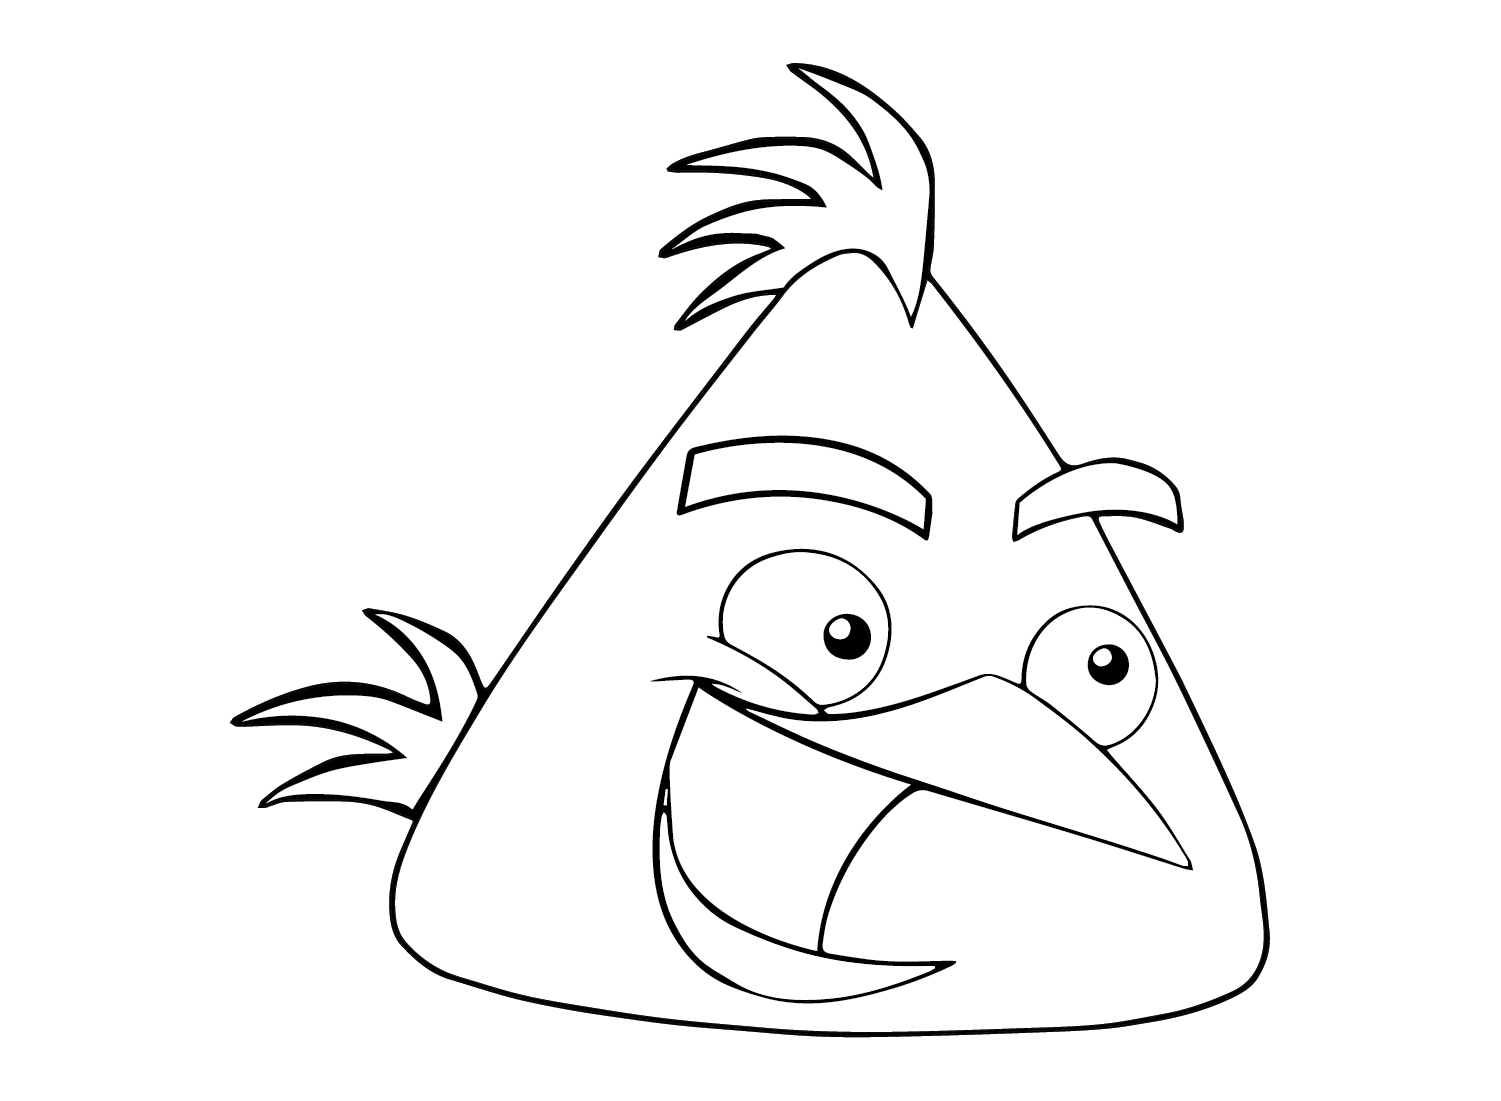 Chuck (Angry Bird) para Imprimir desde Chuck (Angry Bird)